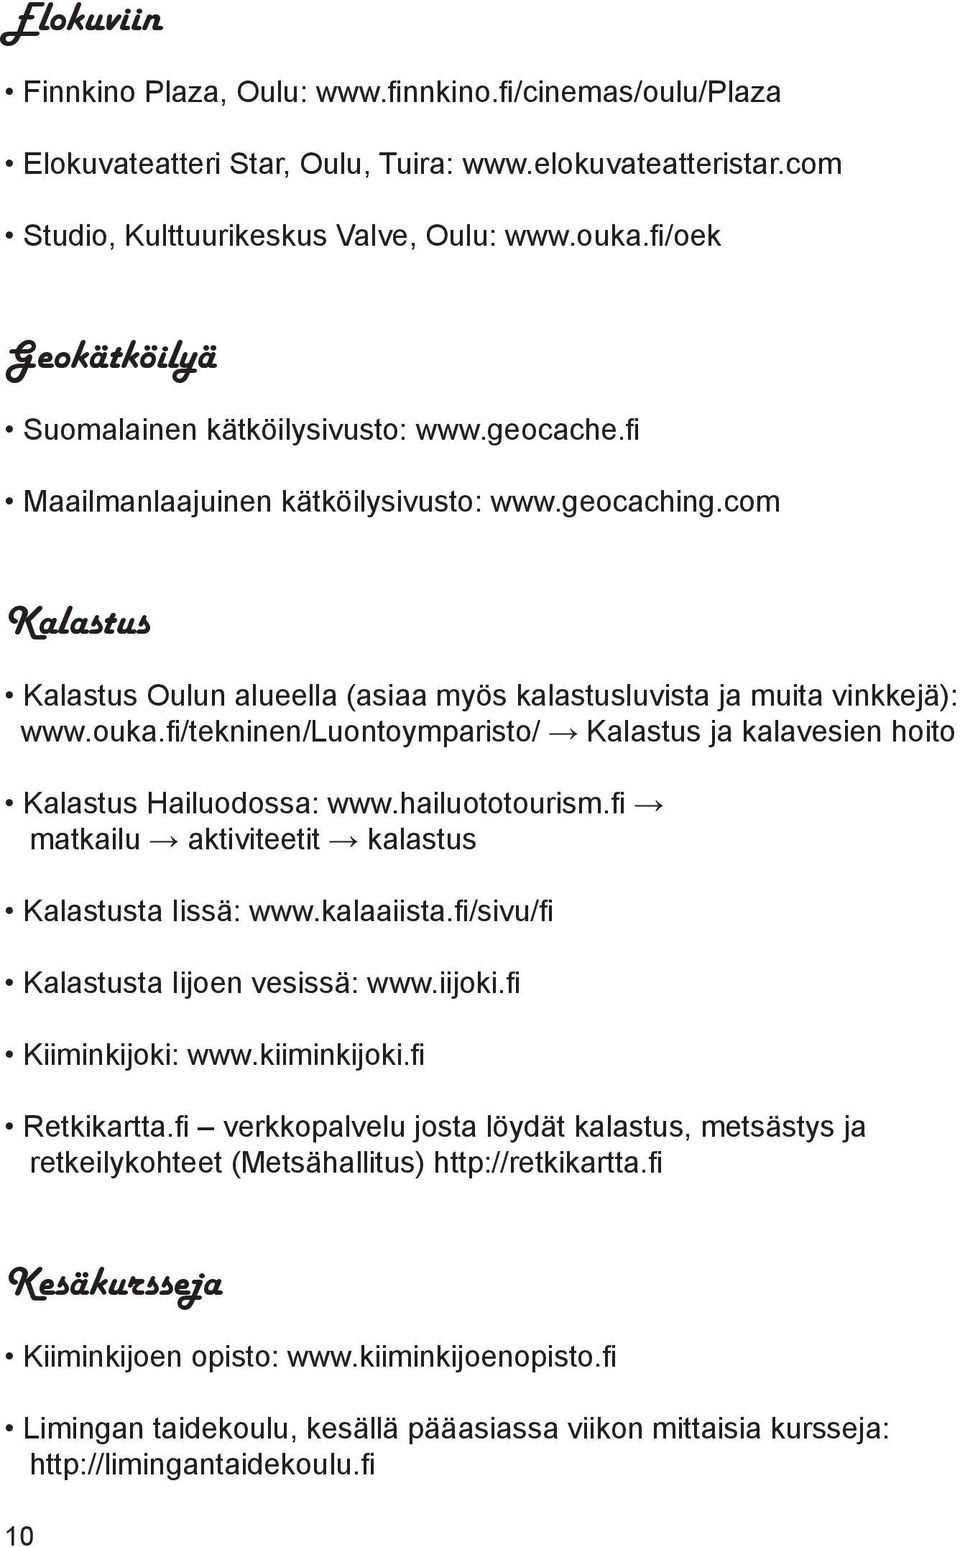 com Kalastus Kalastus Oulun alueella (asiaa myös kalastusluvista ja muita vinkkejä): www.ouka.fi/tekninen/luontoymparisto/ Kalastus ja kalavesien hoito Kalastus Hailuodossa: www.hailuototourism.